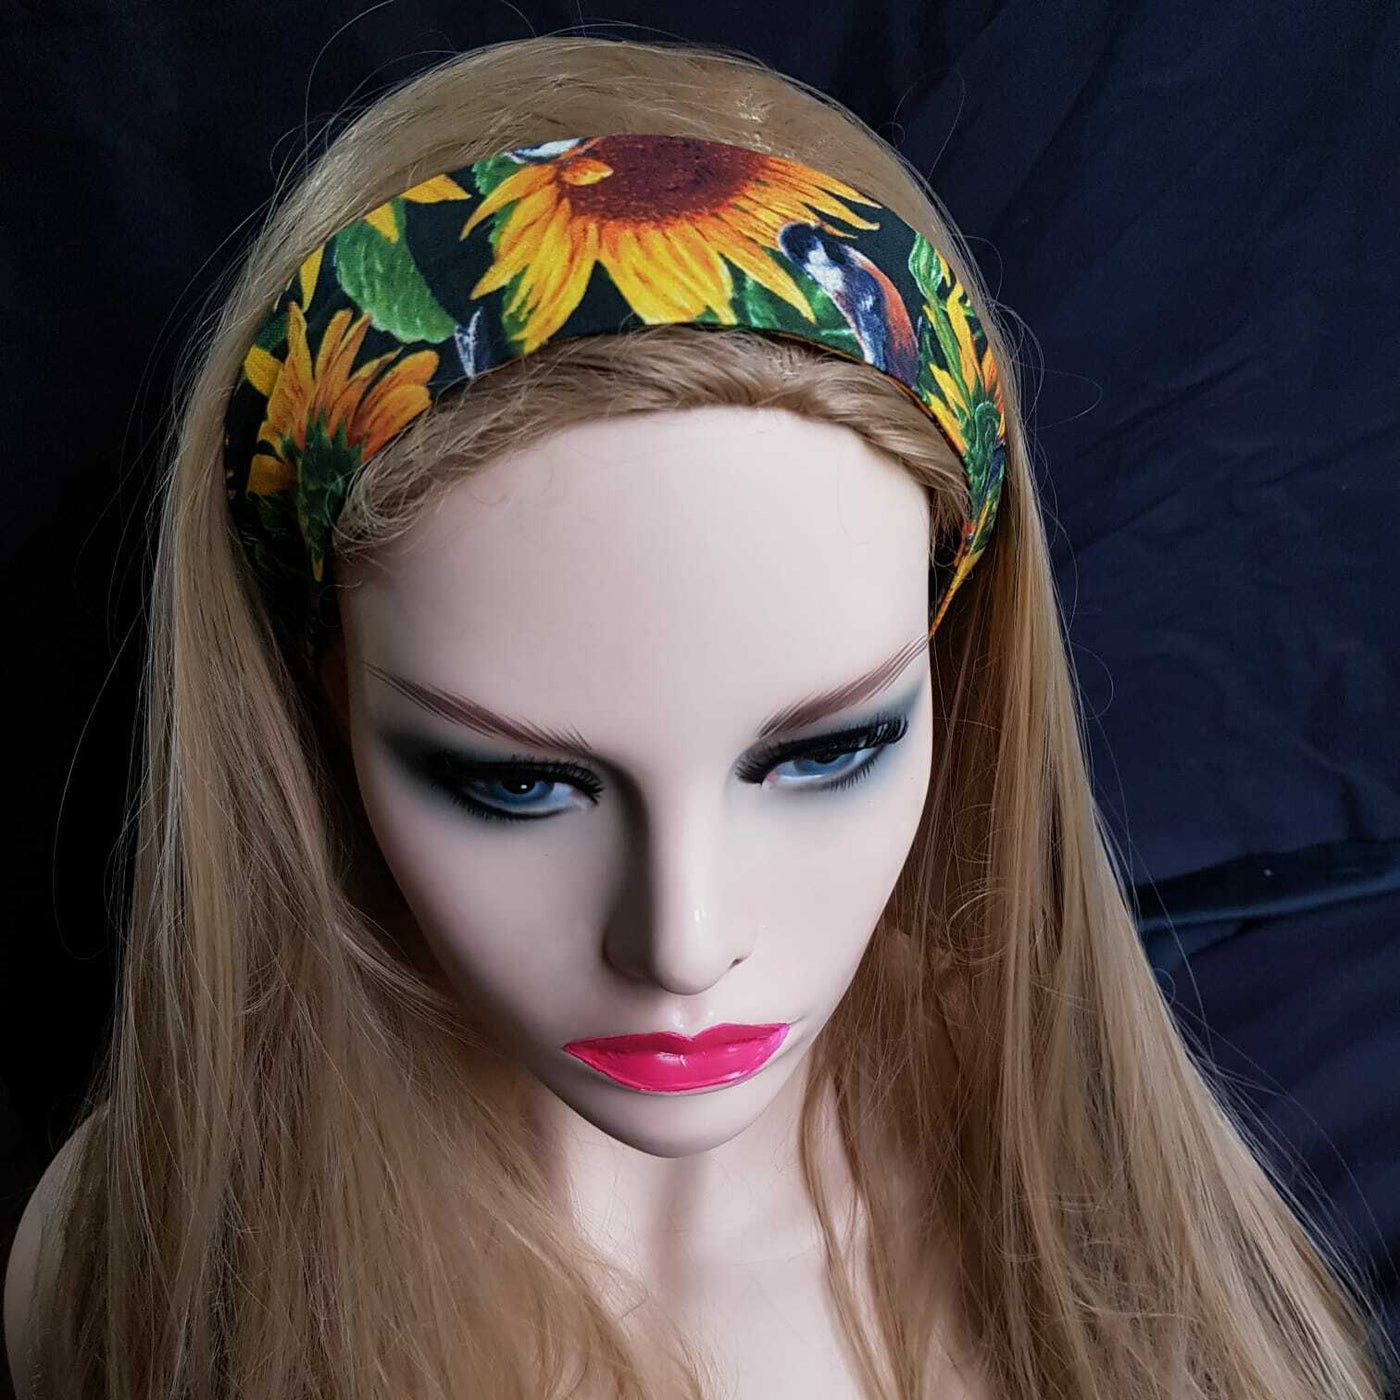 Sunflower Bird Wired Headband Hair Band Rockabilly Retro Scarf Vintage